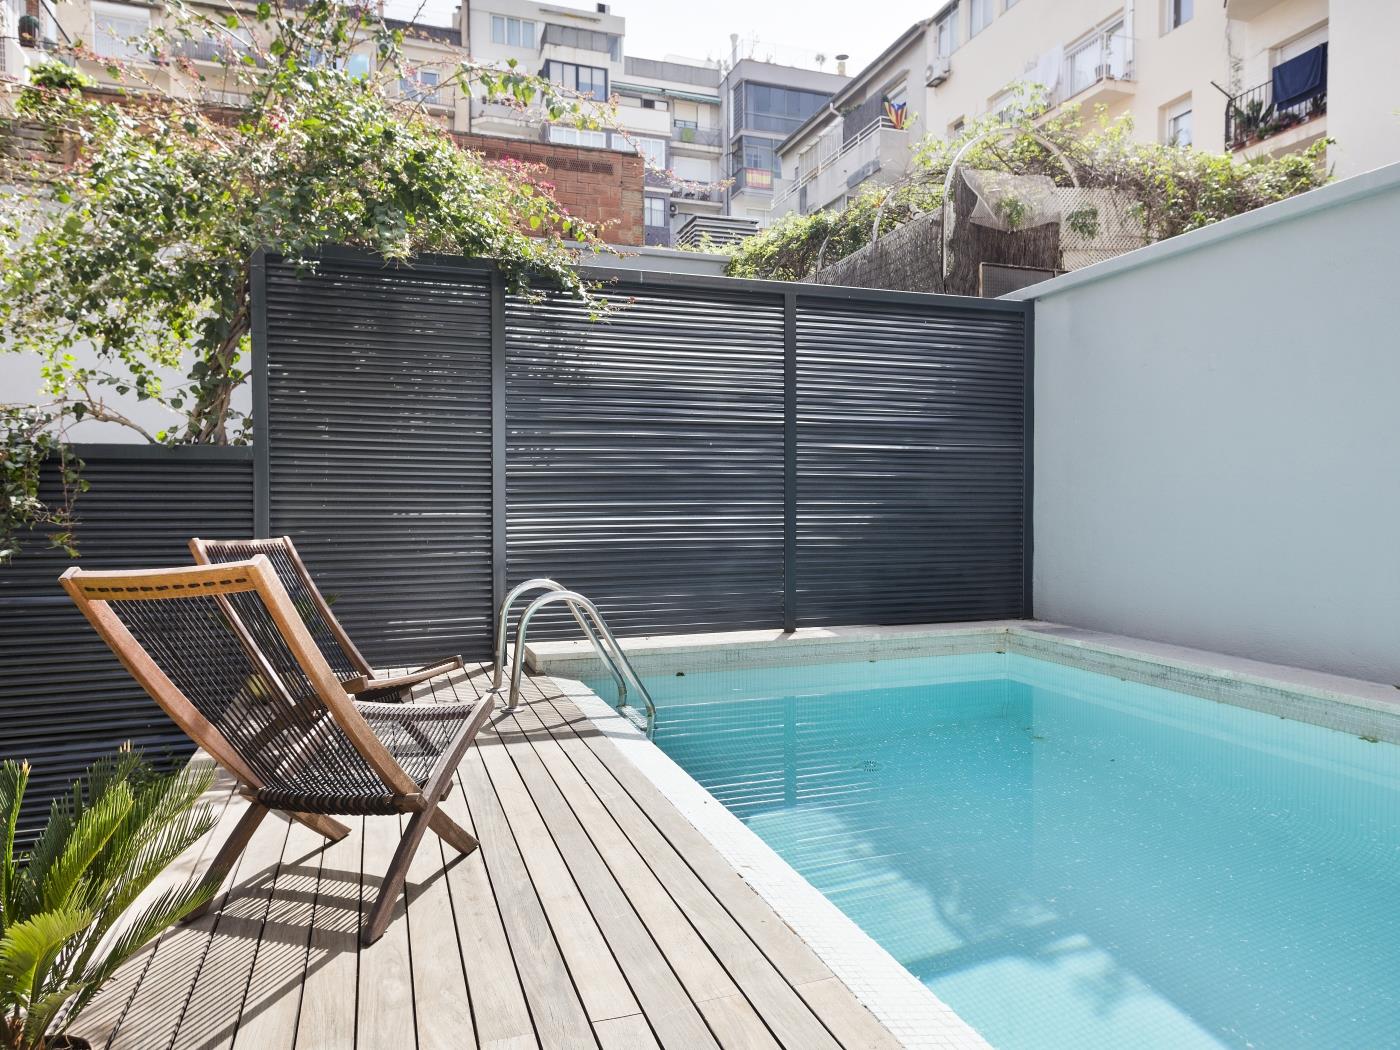 دوبلكس حديث بحديقة خاصة وحمام سباحة - My Space Barcelona شقة